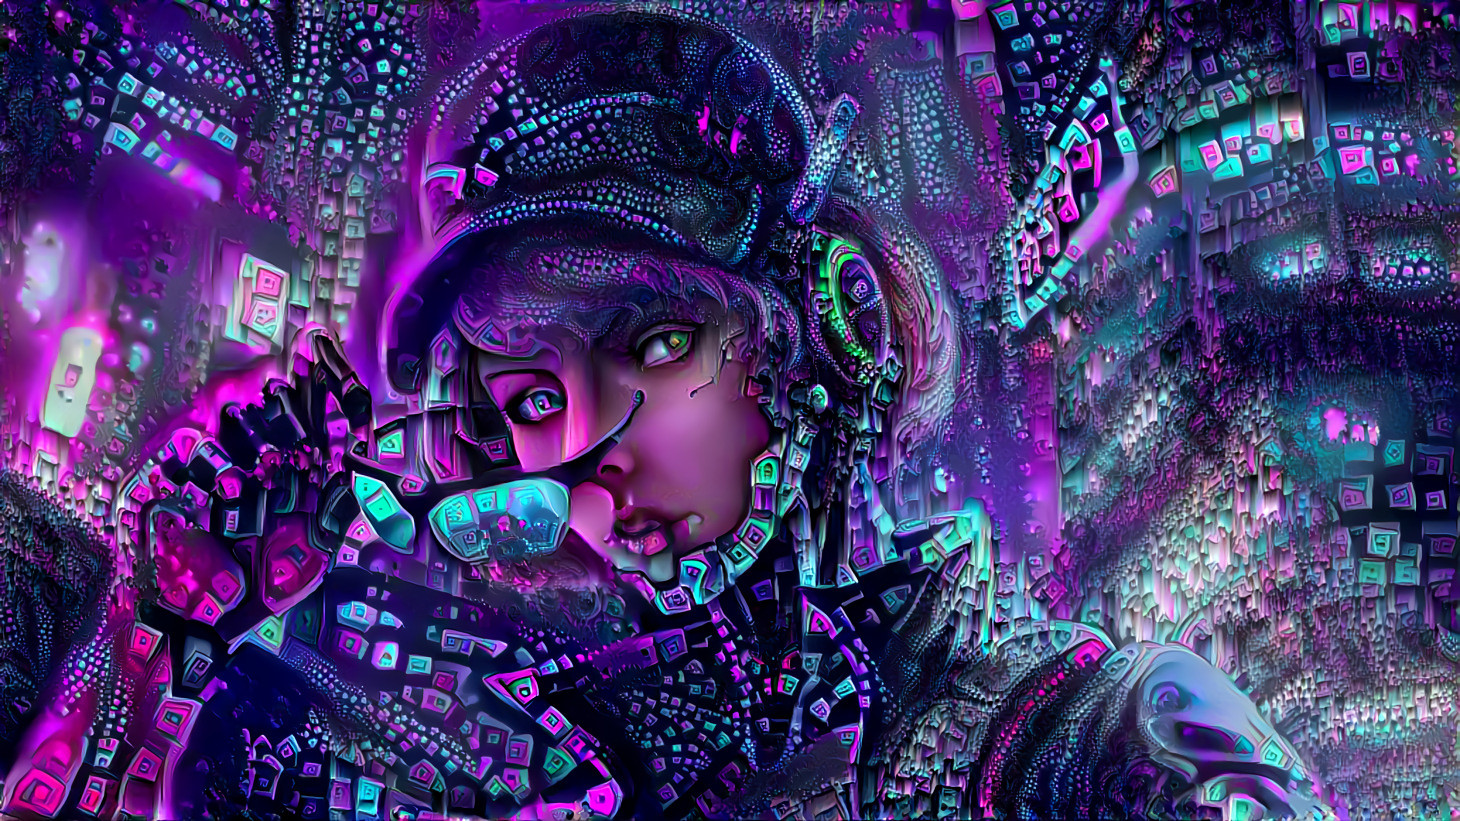 Cyberpunk Girl